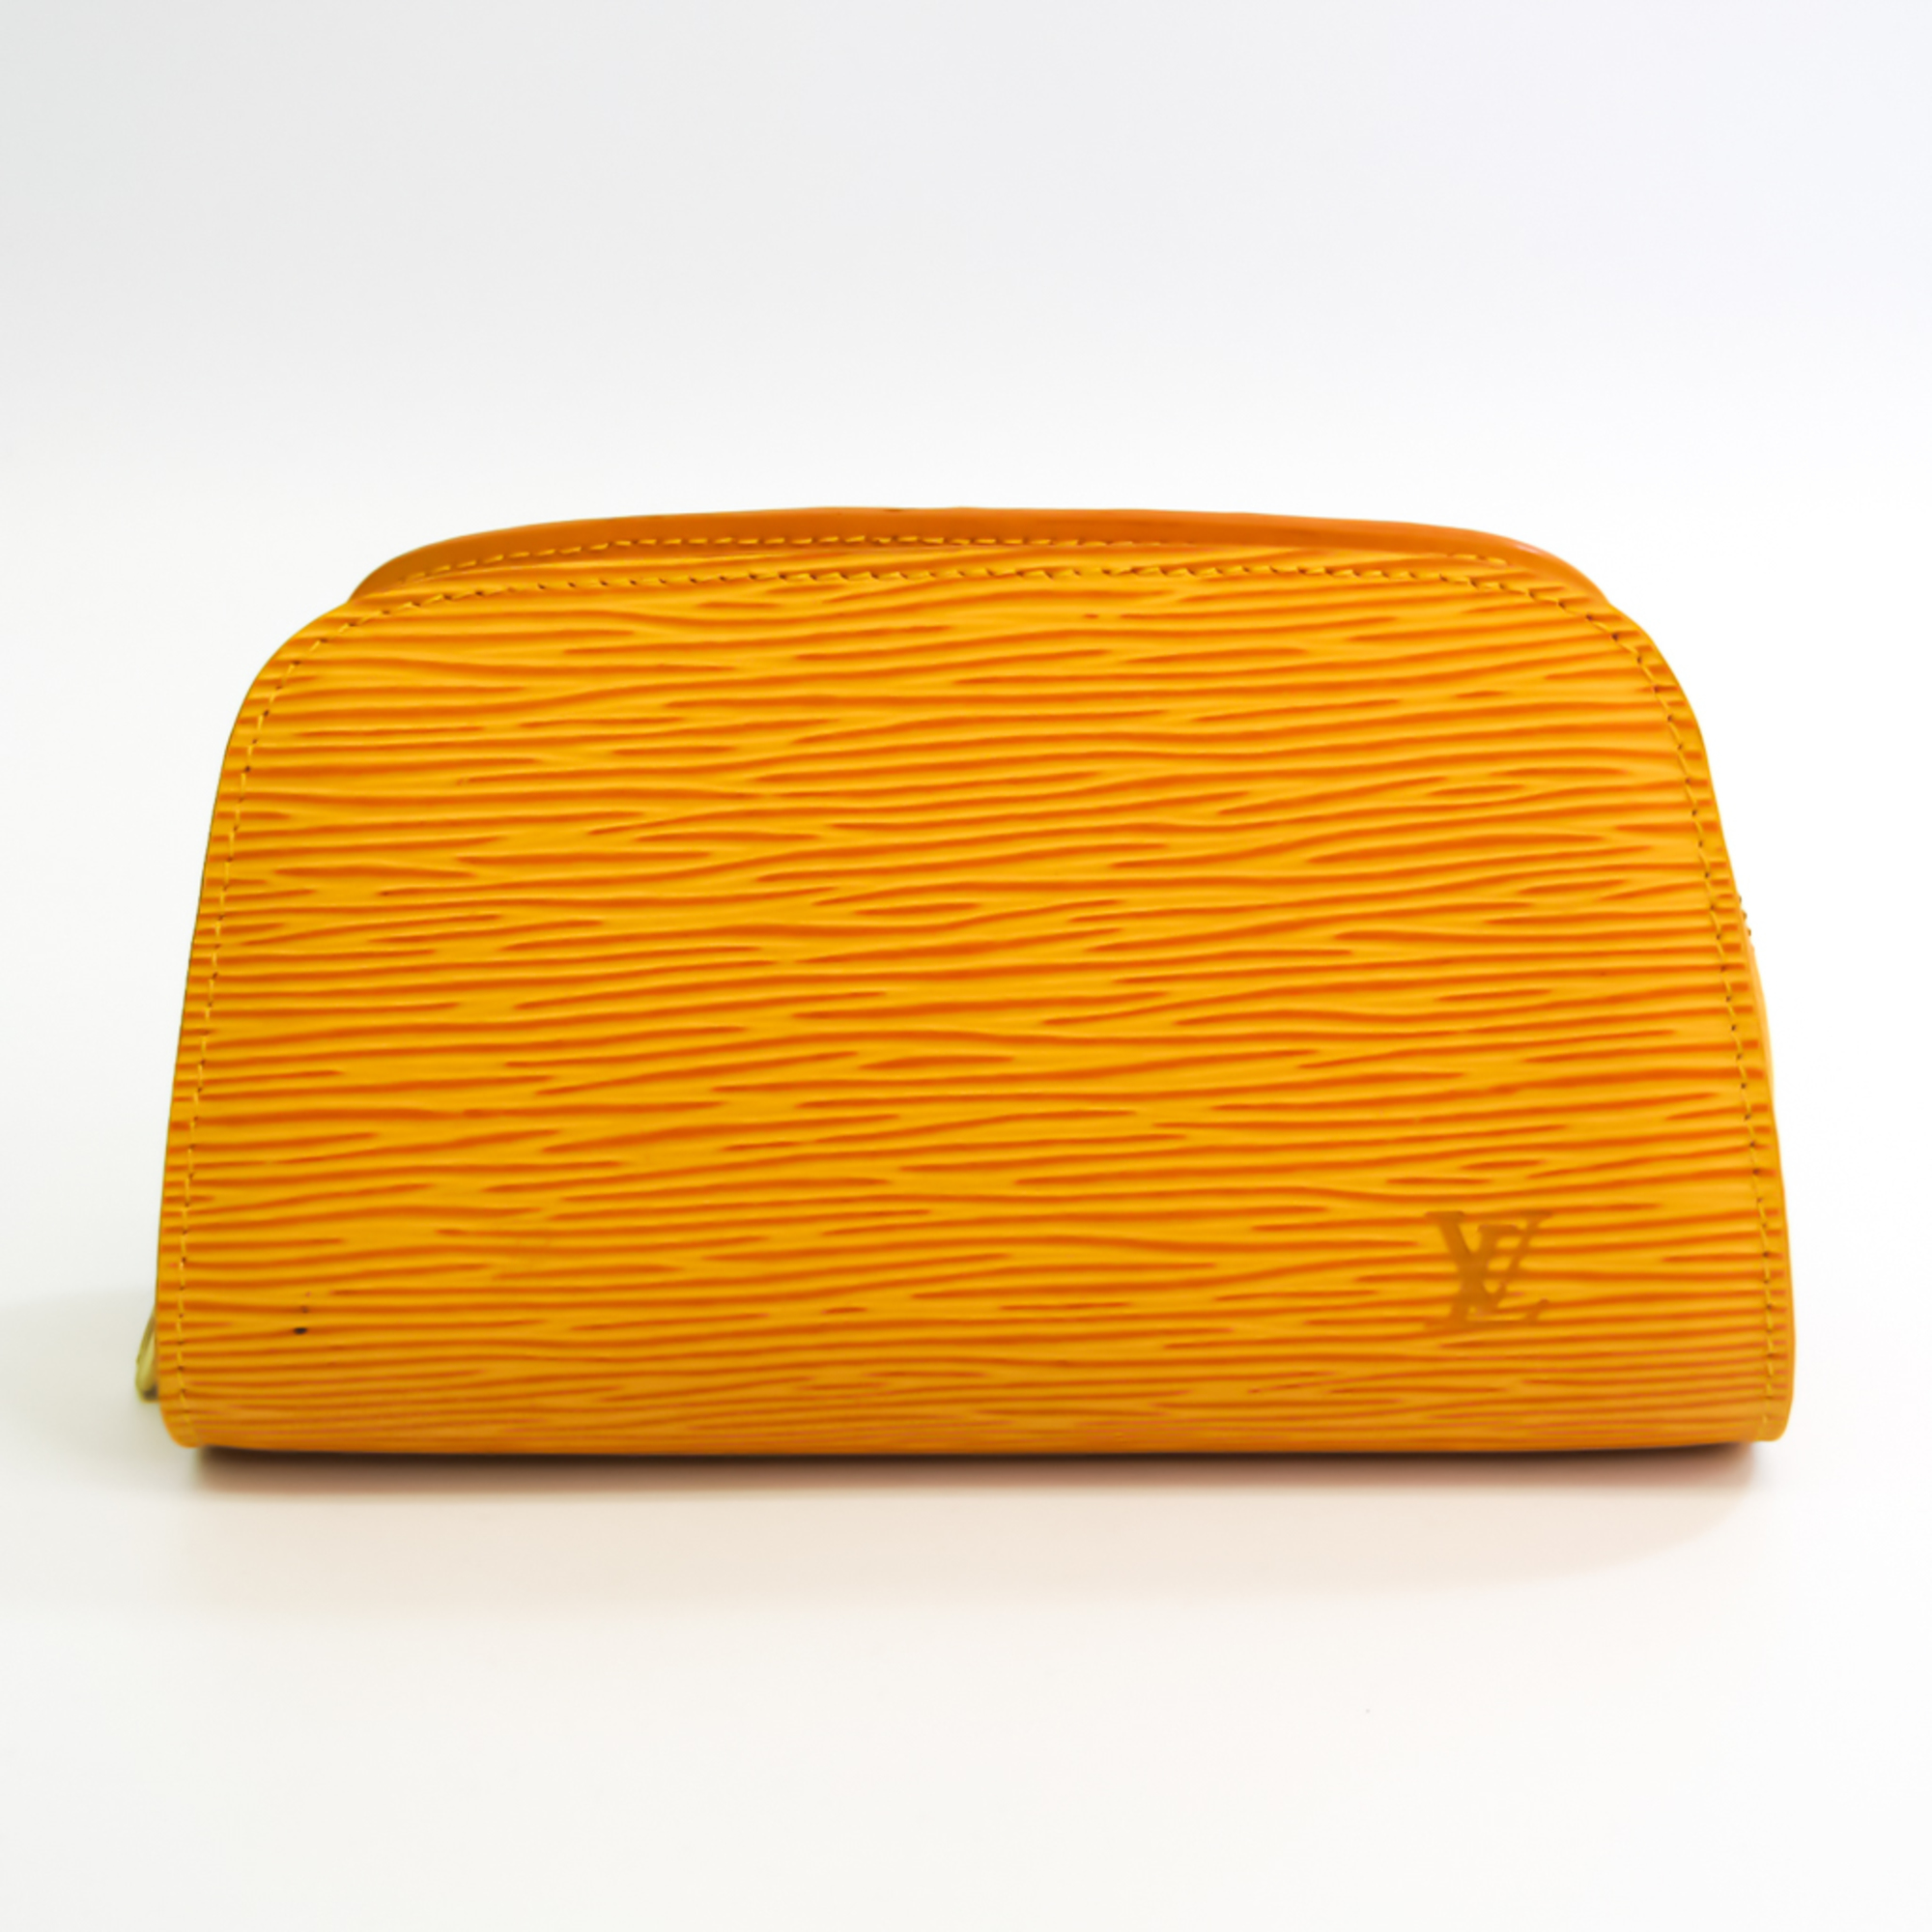 ルイ・ヴィトン(Louis Vuitton) エピ ドーフィーヌPM M48449 